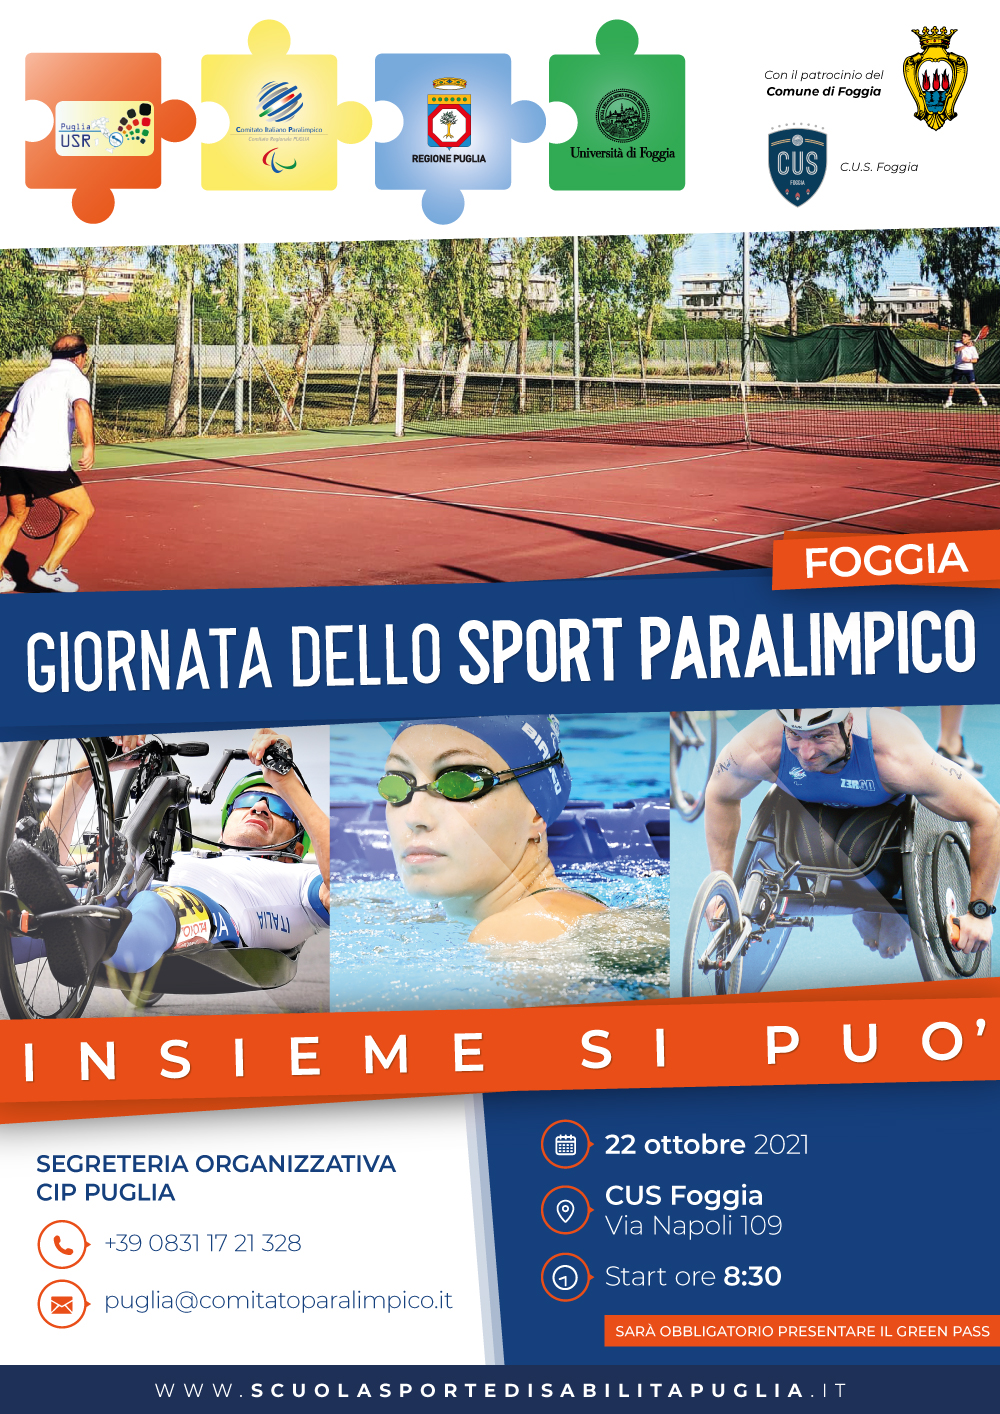 COMUNICATO STAMPA: Giornata dello Sport Paralimpico -Insieme si può FOGGIA 22 ottobre 2021